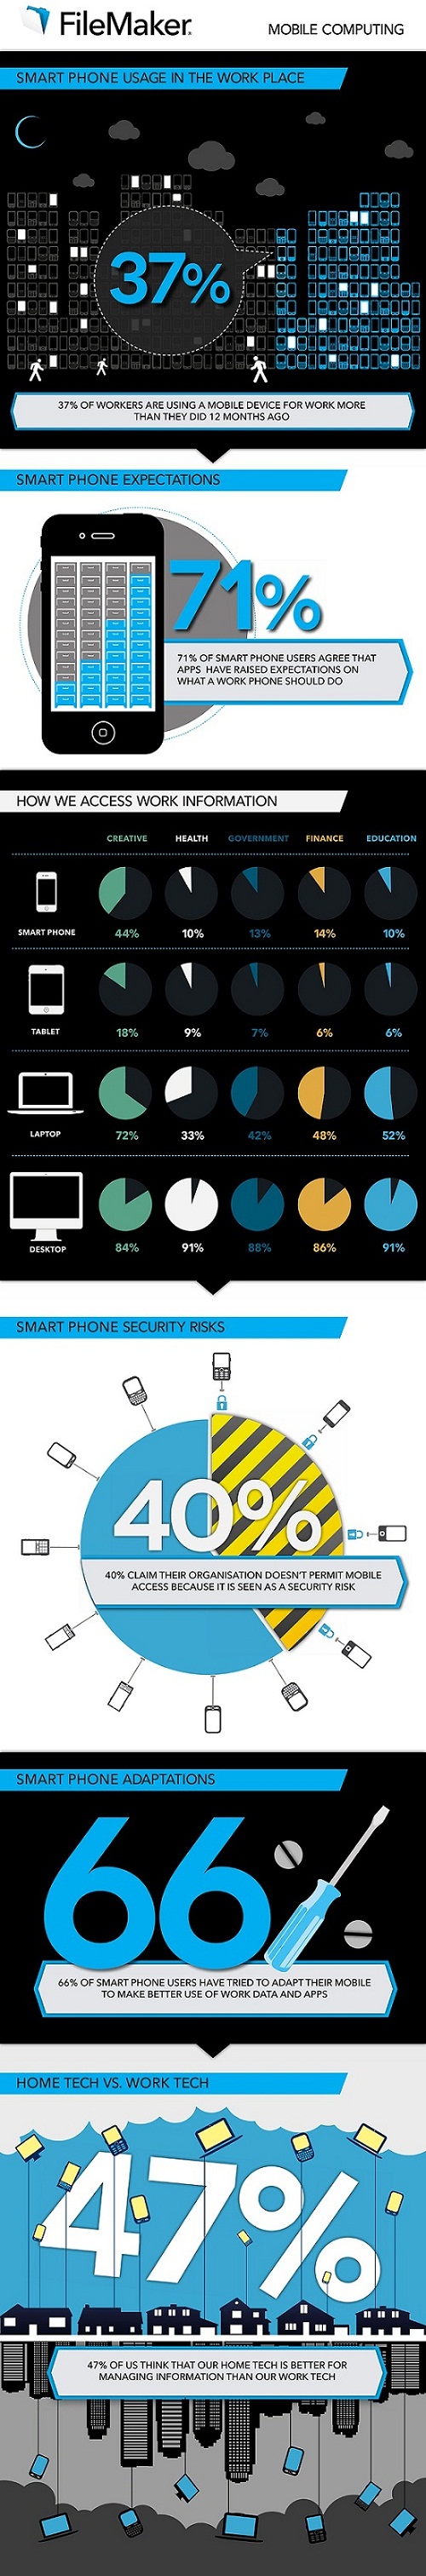 infografia smartohones trabajo.jpg